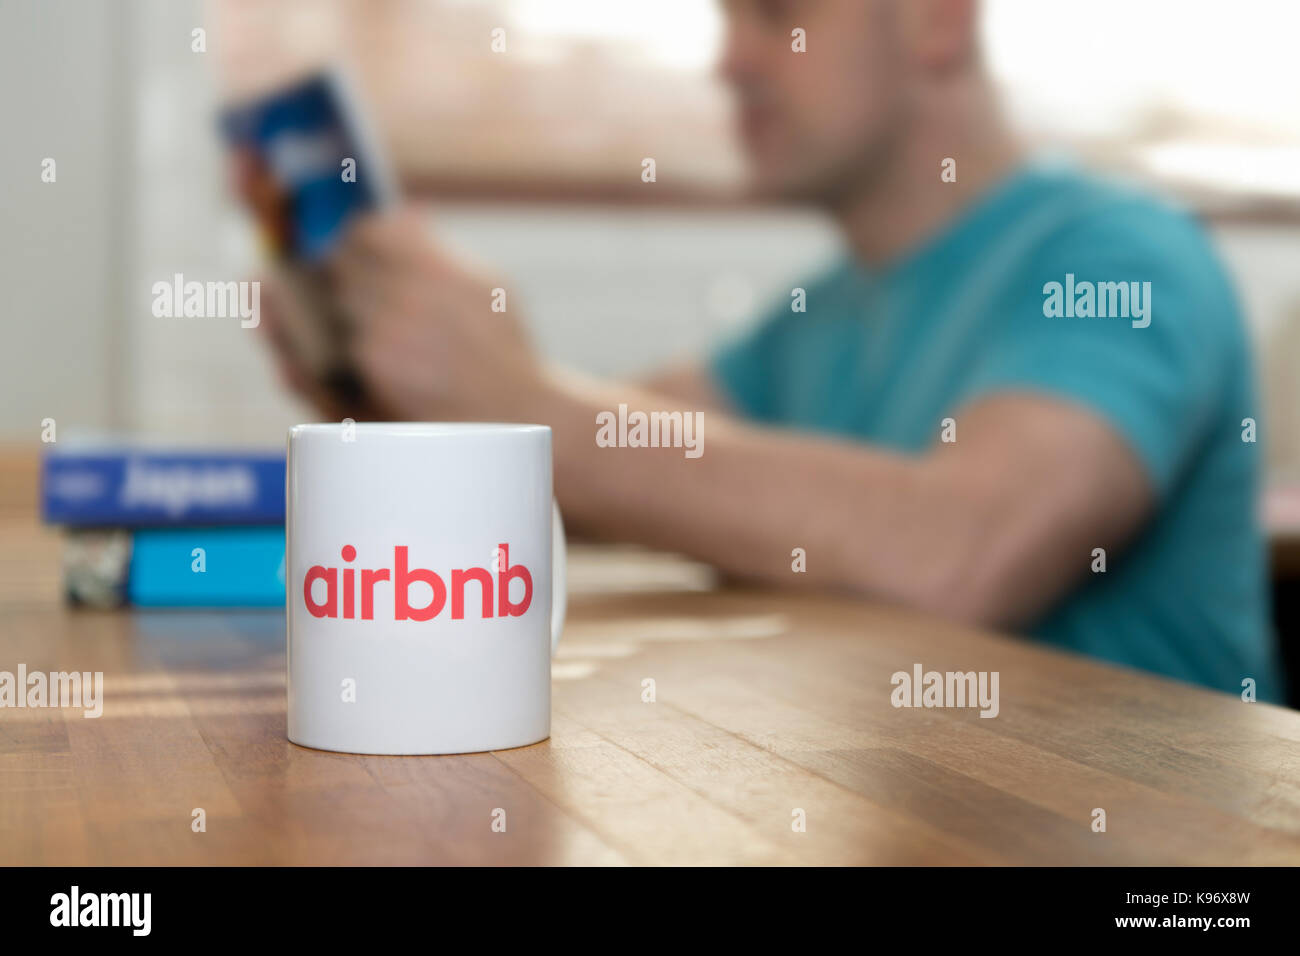 Ein Mann liest Reiseführer Bücher in einer Wohnung, die er mit dem airbnb App gemietet hat, und einem Gebrandeten Airbnb Becher sitzt in den Vordergrund (nur redaktionelle Nutzung). Stockfoto